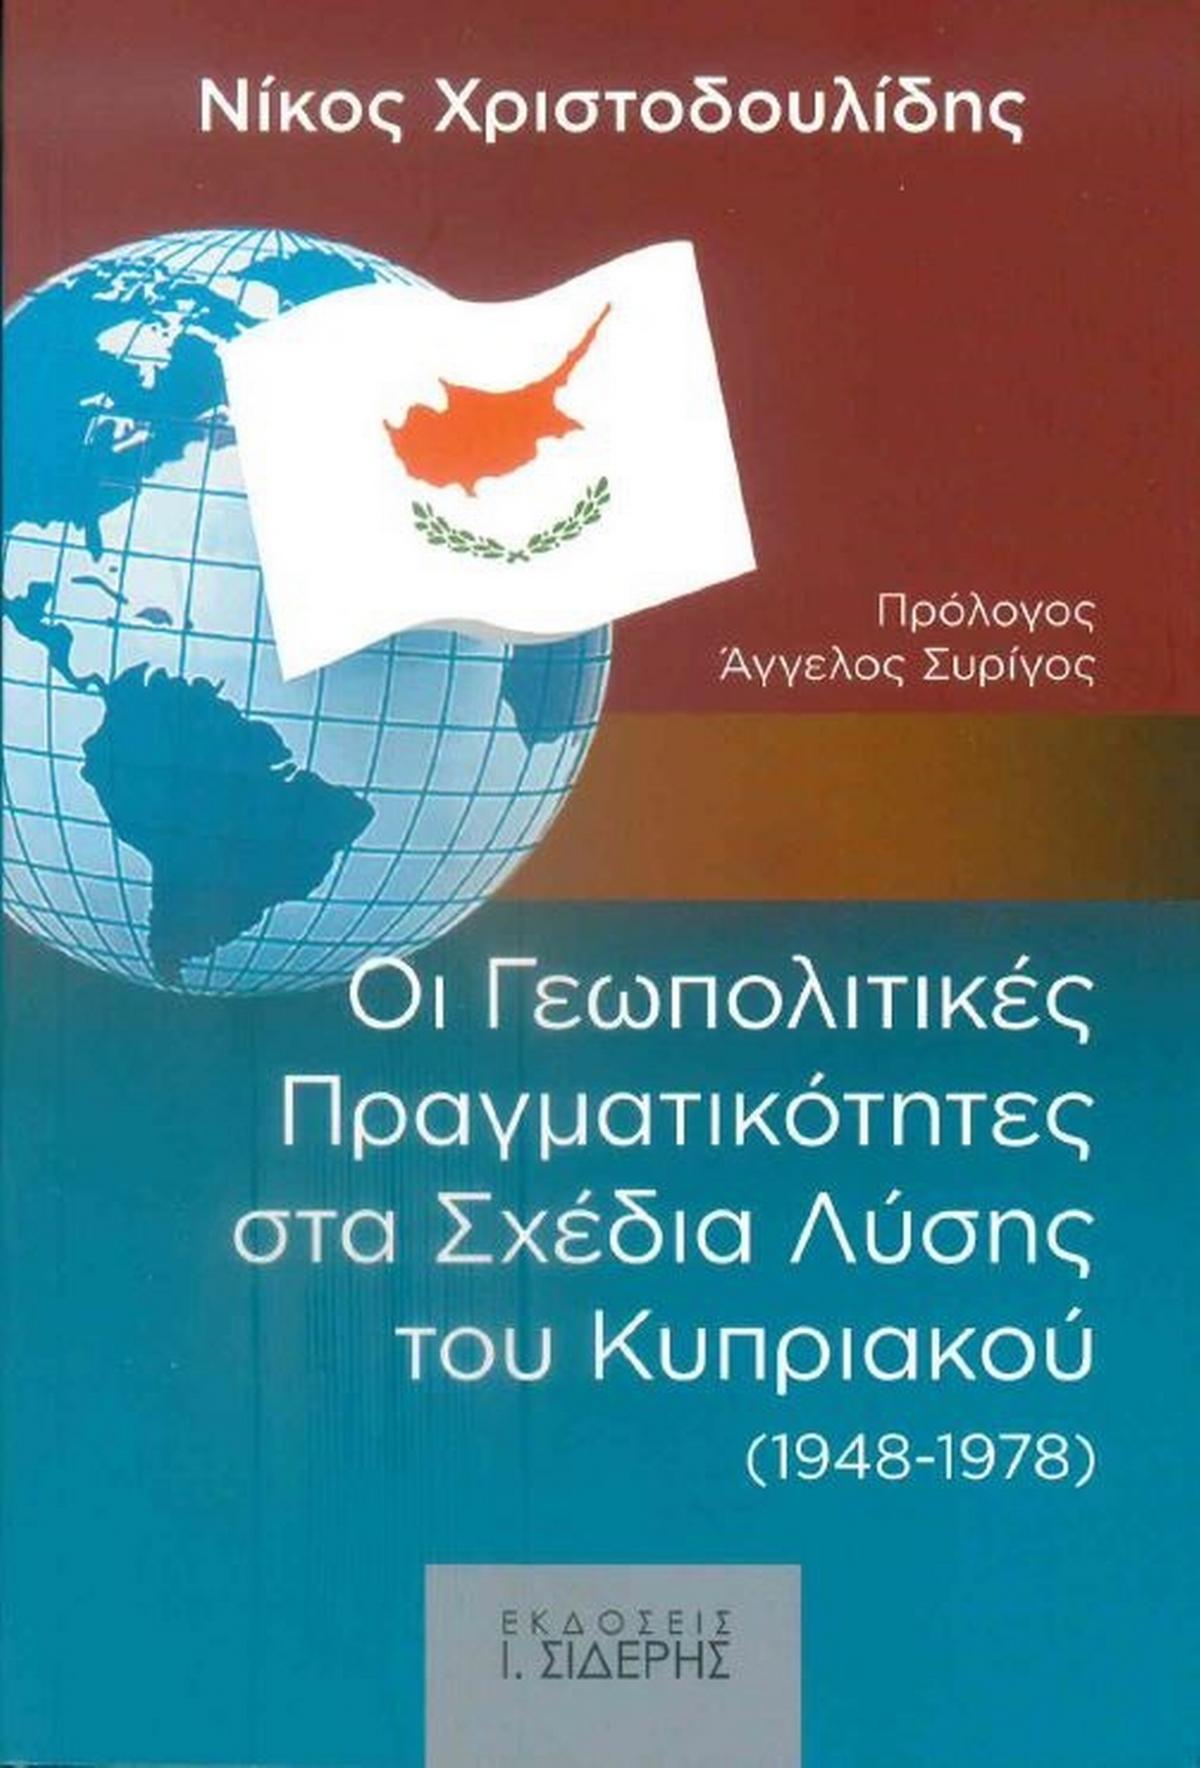 Οι Γεωπολιτικές Πραγματικότητες στα Σχέδια Λύσης του Κυπριακού 1948-1978